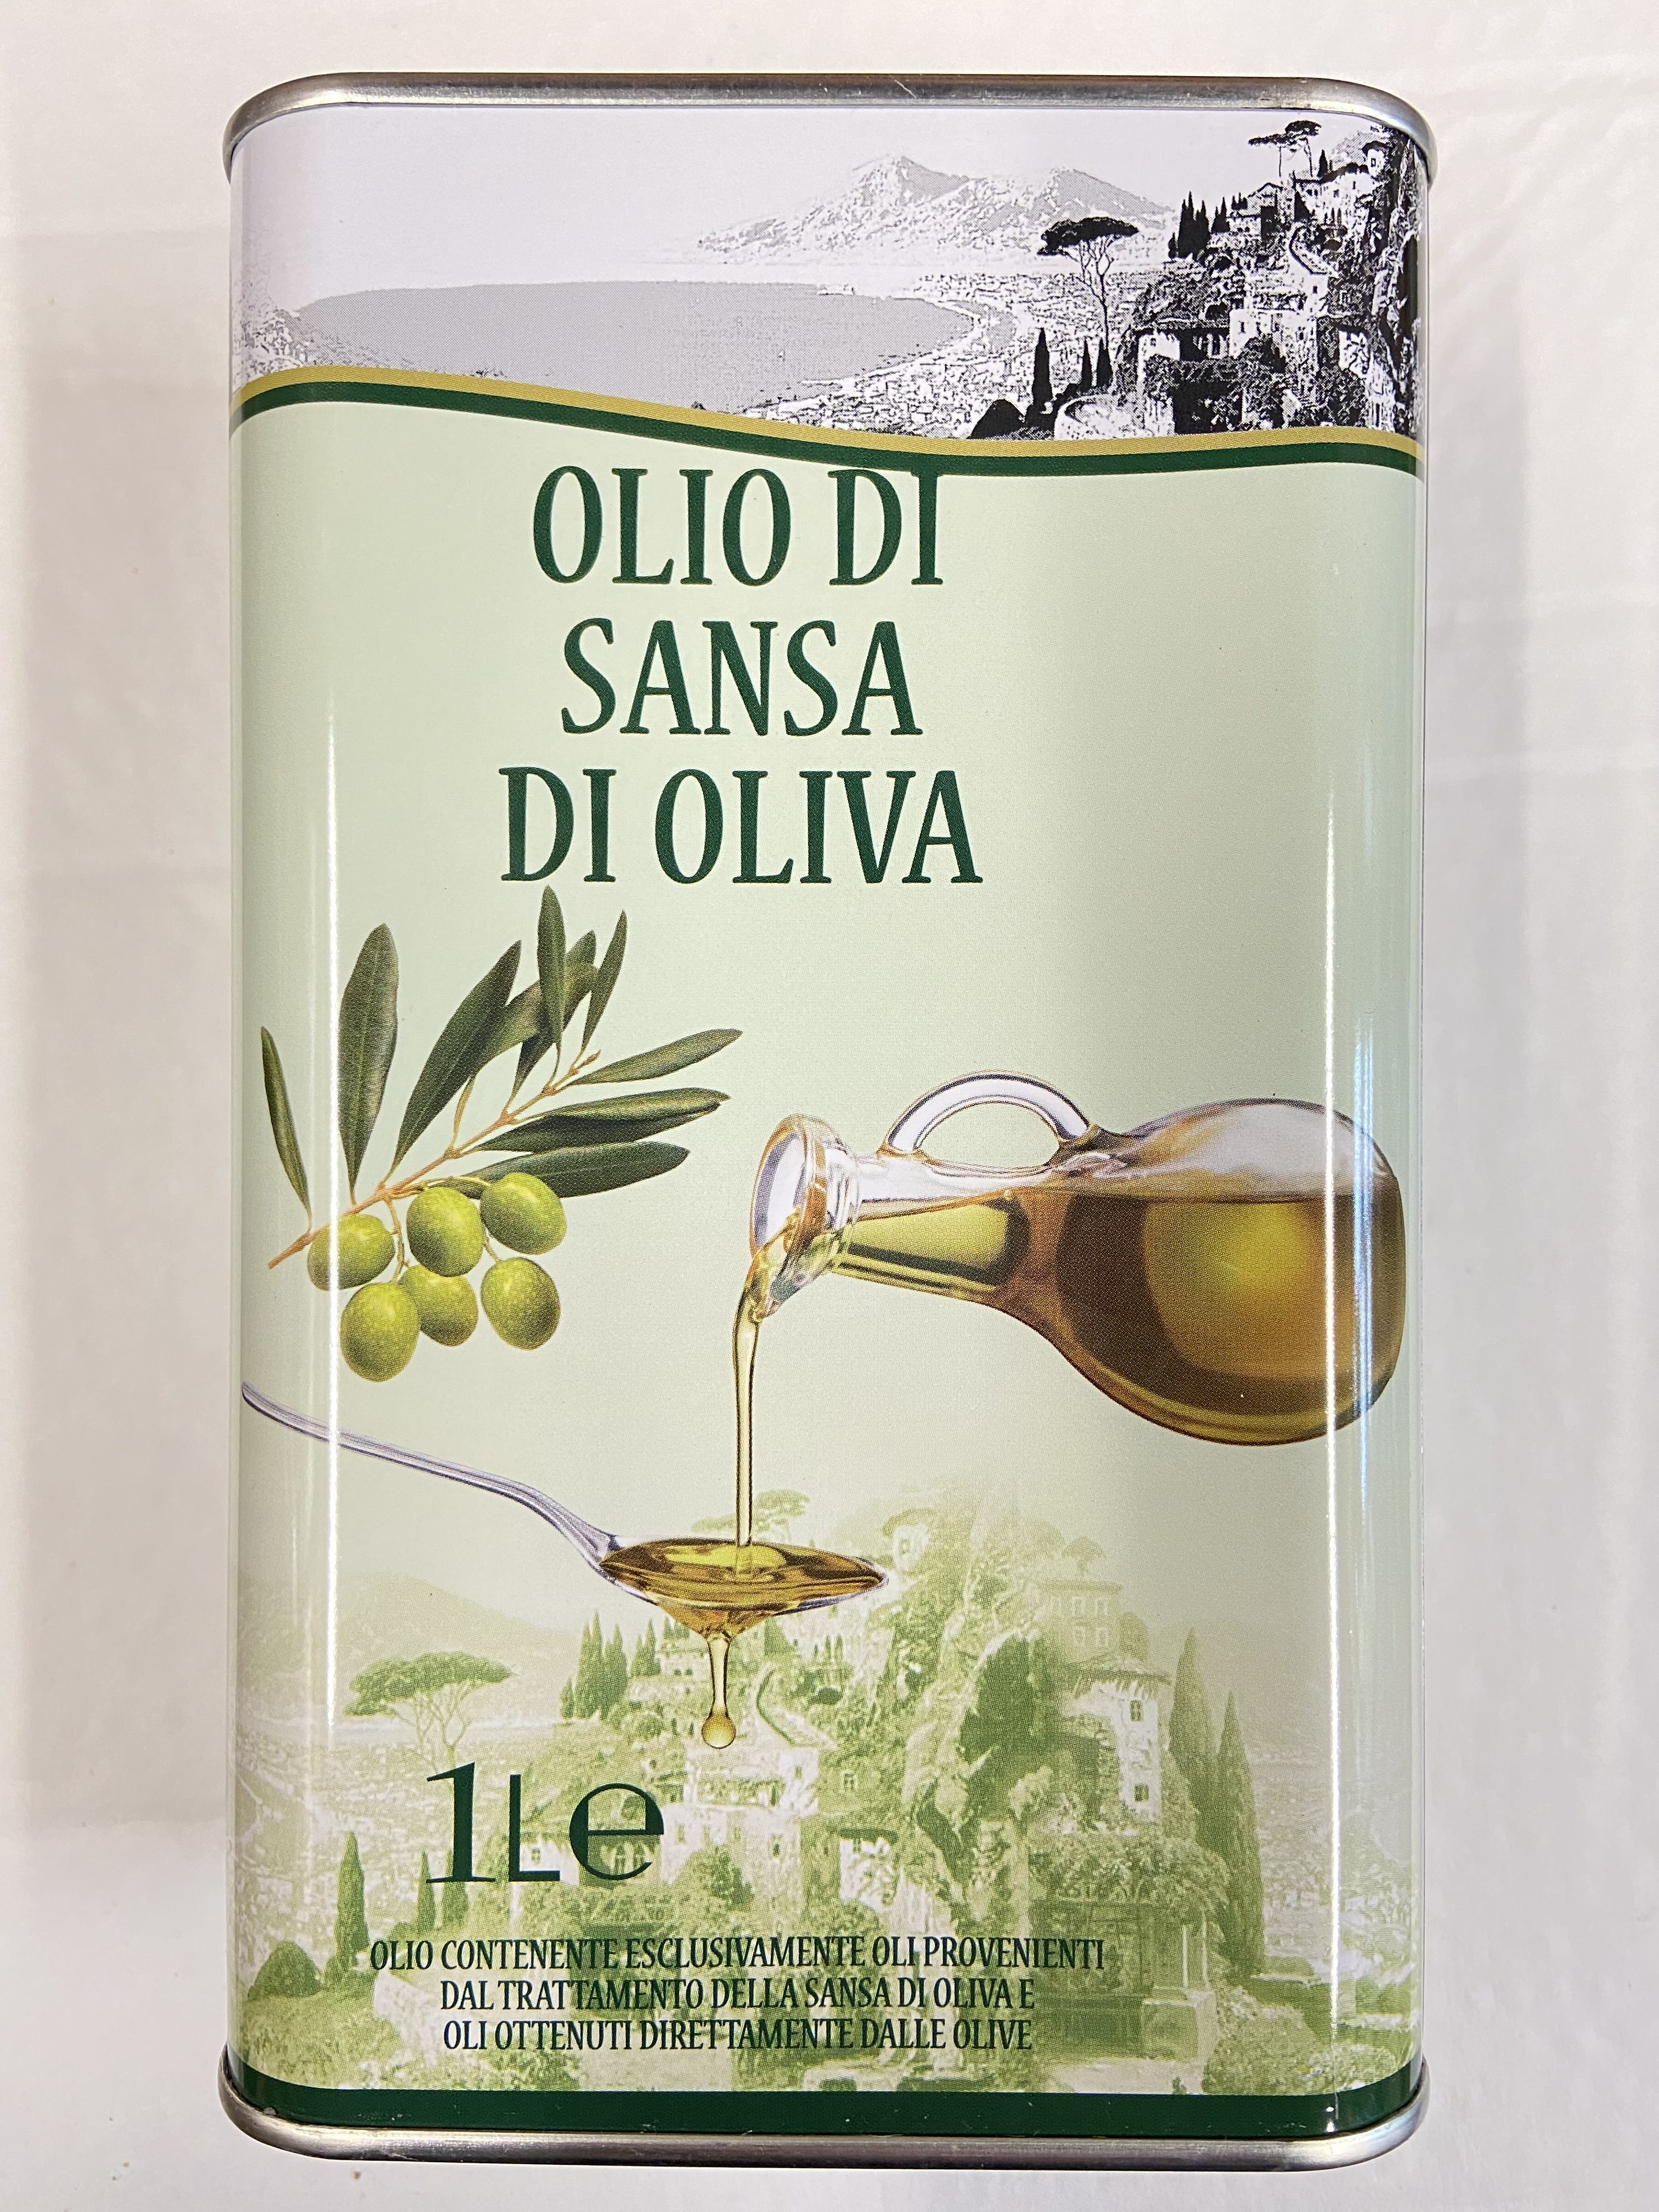 Оливковое масло vesuvio. Масло оливковое Vesuvio Sansa di Oliva, 1 л (Италия). Оливковое масло Vesuvio olio di Sansa di Oliva. Оливковое масло Pomace Olive Oil, 1 л. Масло оливковое 1л olio di Sansa.